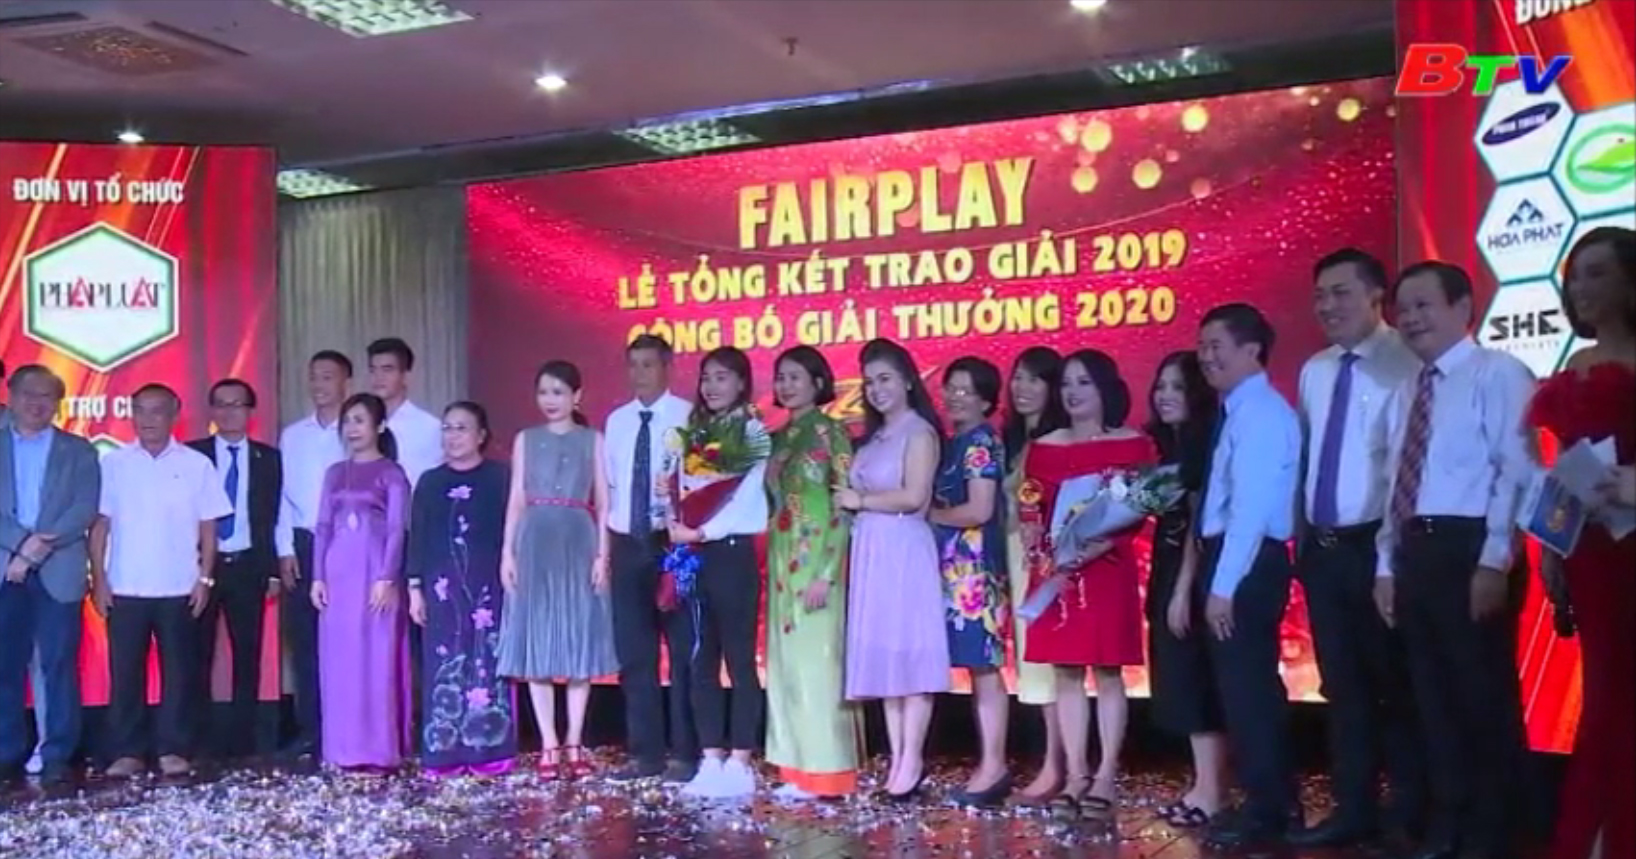 Lễ trao Giải thưởng Fair play 2019 và khởi động Giải thưởng Fair play 2020